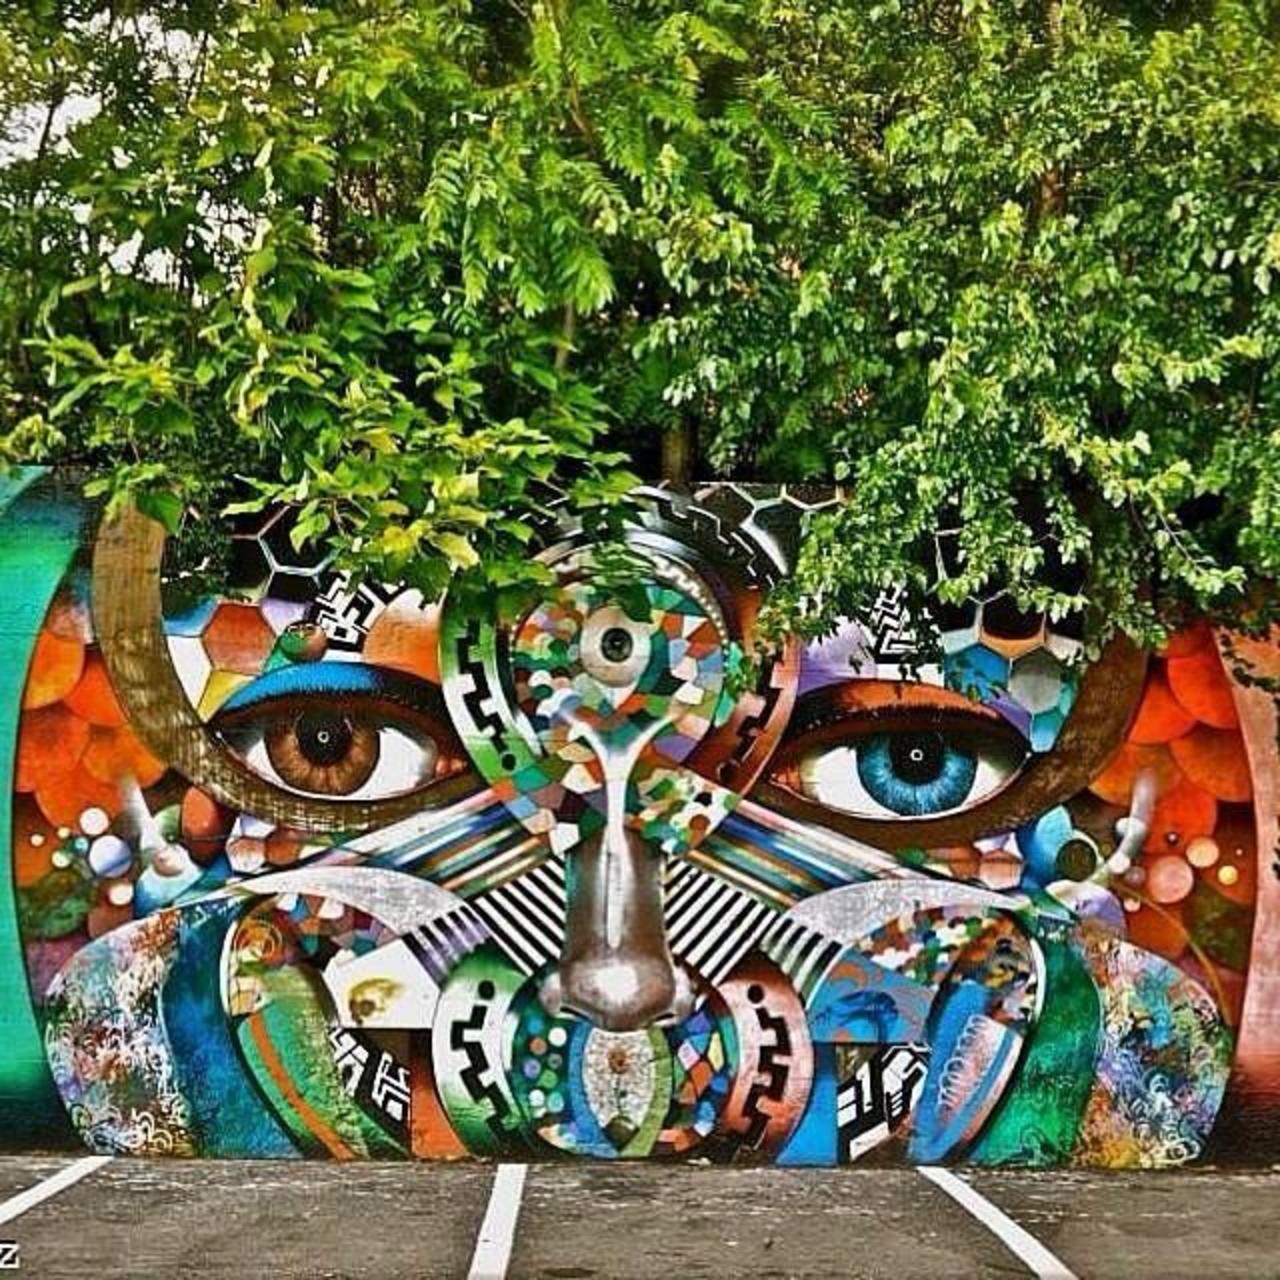 Artist @chorboogie new nature & Street Art piece. #art #mural #graffiti #streetart http://t.co/KdezPTQIJQ